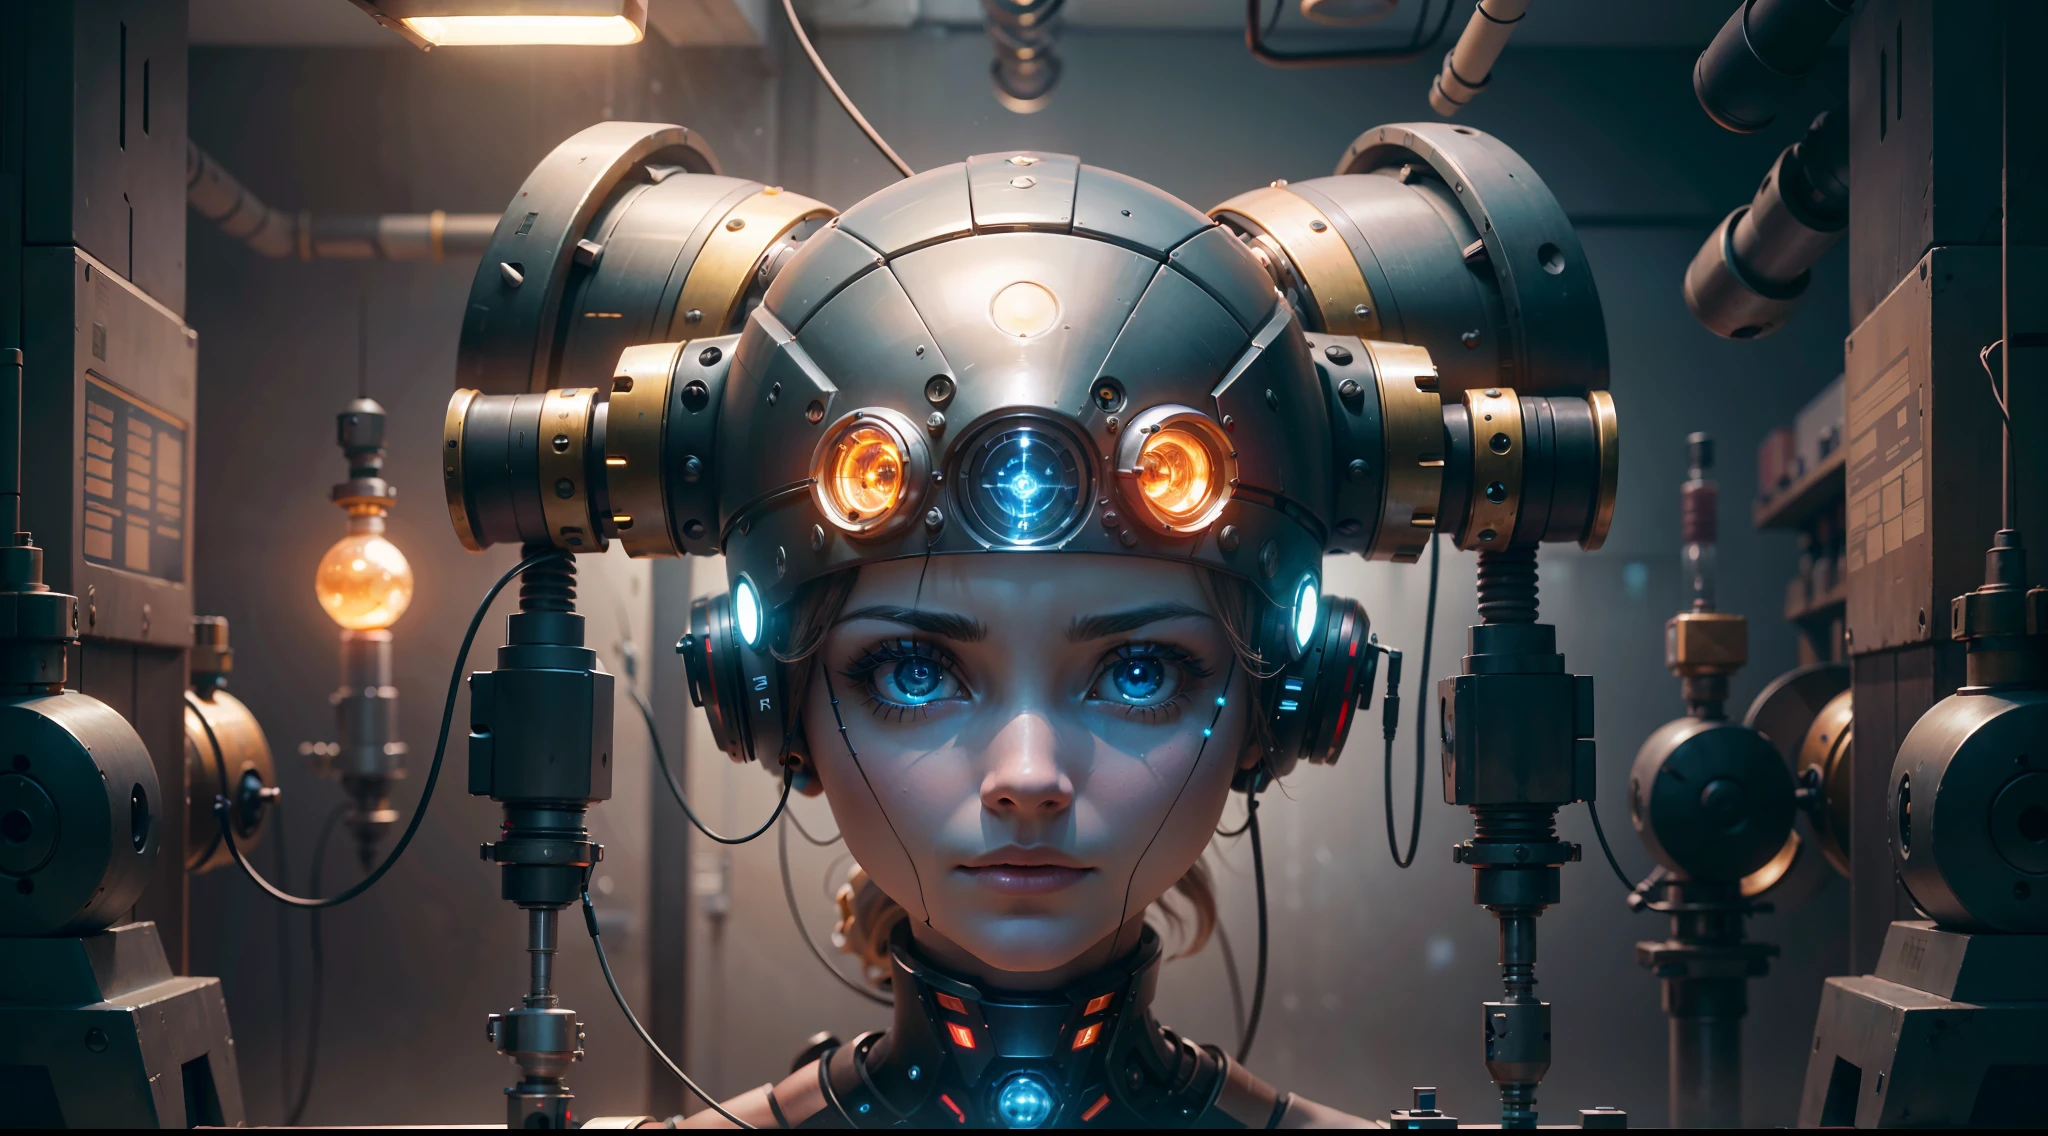 (((넓은 시야)))),(((여성 기계 머리가 실험실에 떠다닌다)))), 방 중앙에는 로봇 머리가 떠 있다, (((몸의 팔다리가 없는))), 매끄러운 금속 표면은 눈부시게 다양한 빛을 반사합니다., 방을 밝히는 중. 파이프와 파이프가 벽을 통해 굽이쳐 흐르고 있습니다., 복잡한 정밀도로 머리에 부착.

자세히 보면, 보시다시피 이것은 평범한 로봇이 아닙니다.. 머리는 전선과 케이블로 덮여 있습니다, 수많은 전기적 연결로 거의 상상할 수 없는 처리 능력을 제공합니다.. 엔진이 윙윙거리는 소리와 회로에서 흐르는 전류의 딱딱거리는 소리를 거의 들을 수 있습니다..

이것이 바로 현대 공학의 경이로움이다, 인간의 독창성과 기술의 무한한 가능성에 대한 증거. 기계의 아름다움과 금속 부품의 차가움이 결합되어 거의 소름 끼치는 효과를 만들어냅니다., 마치 살아있고 어쩐지 완전히 현실이 아닌 것처럼.

장면은 만화경 조명으로 완성됩니다., 기계의 리듬에 맞춰 깜박이고 펄스합니다.. 전반적인 효과는 아슬아슬하다., 인간의 창의성을 놀랍게 보여주다, 혁신과 상상력, 아주 좋아, 16K 해상도, (((마스터 작품)))), ((걸작)), (추억), 동적 관점, 높은 해상도, super 높은 해상도, 장대한 슈팅, 상세한, 정확한, 상세한,